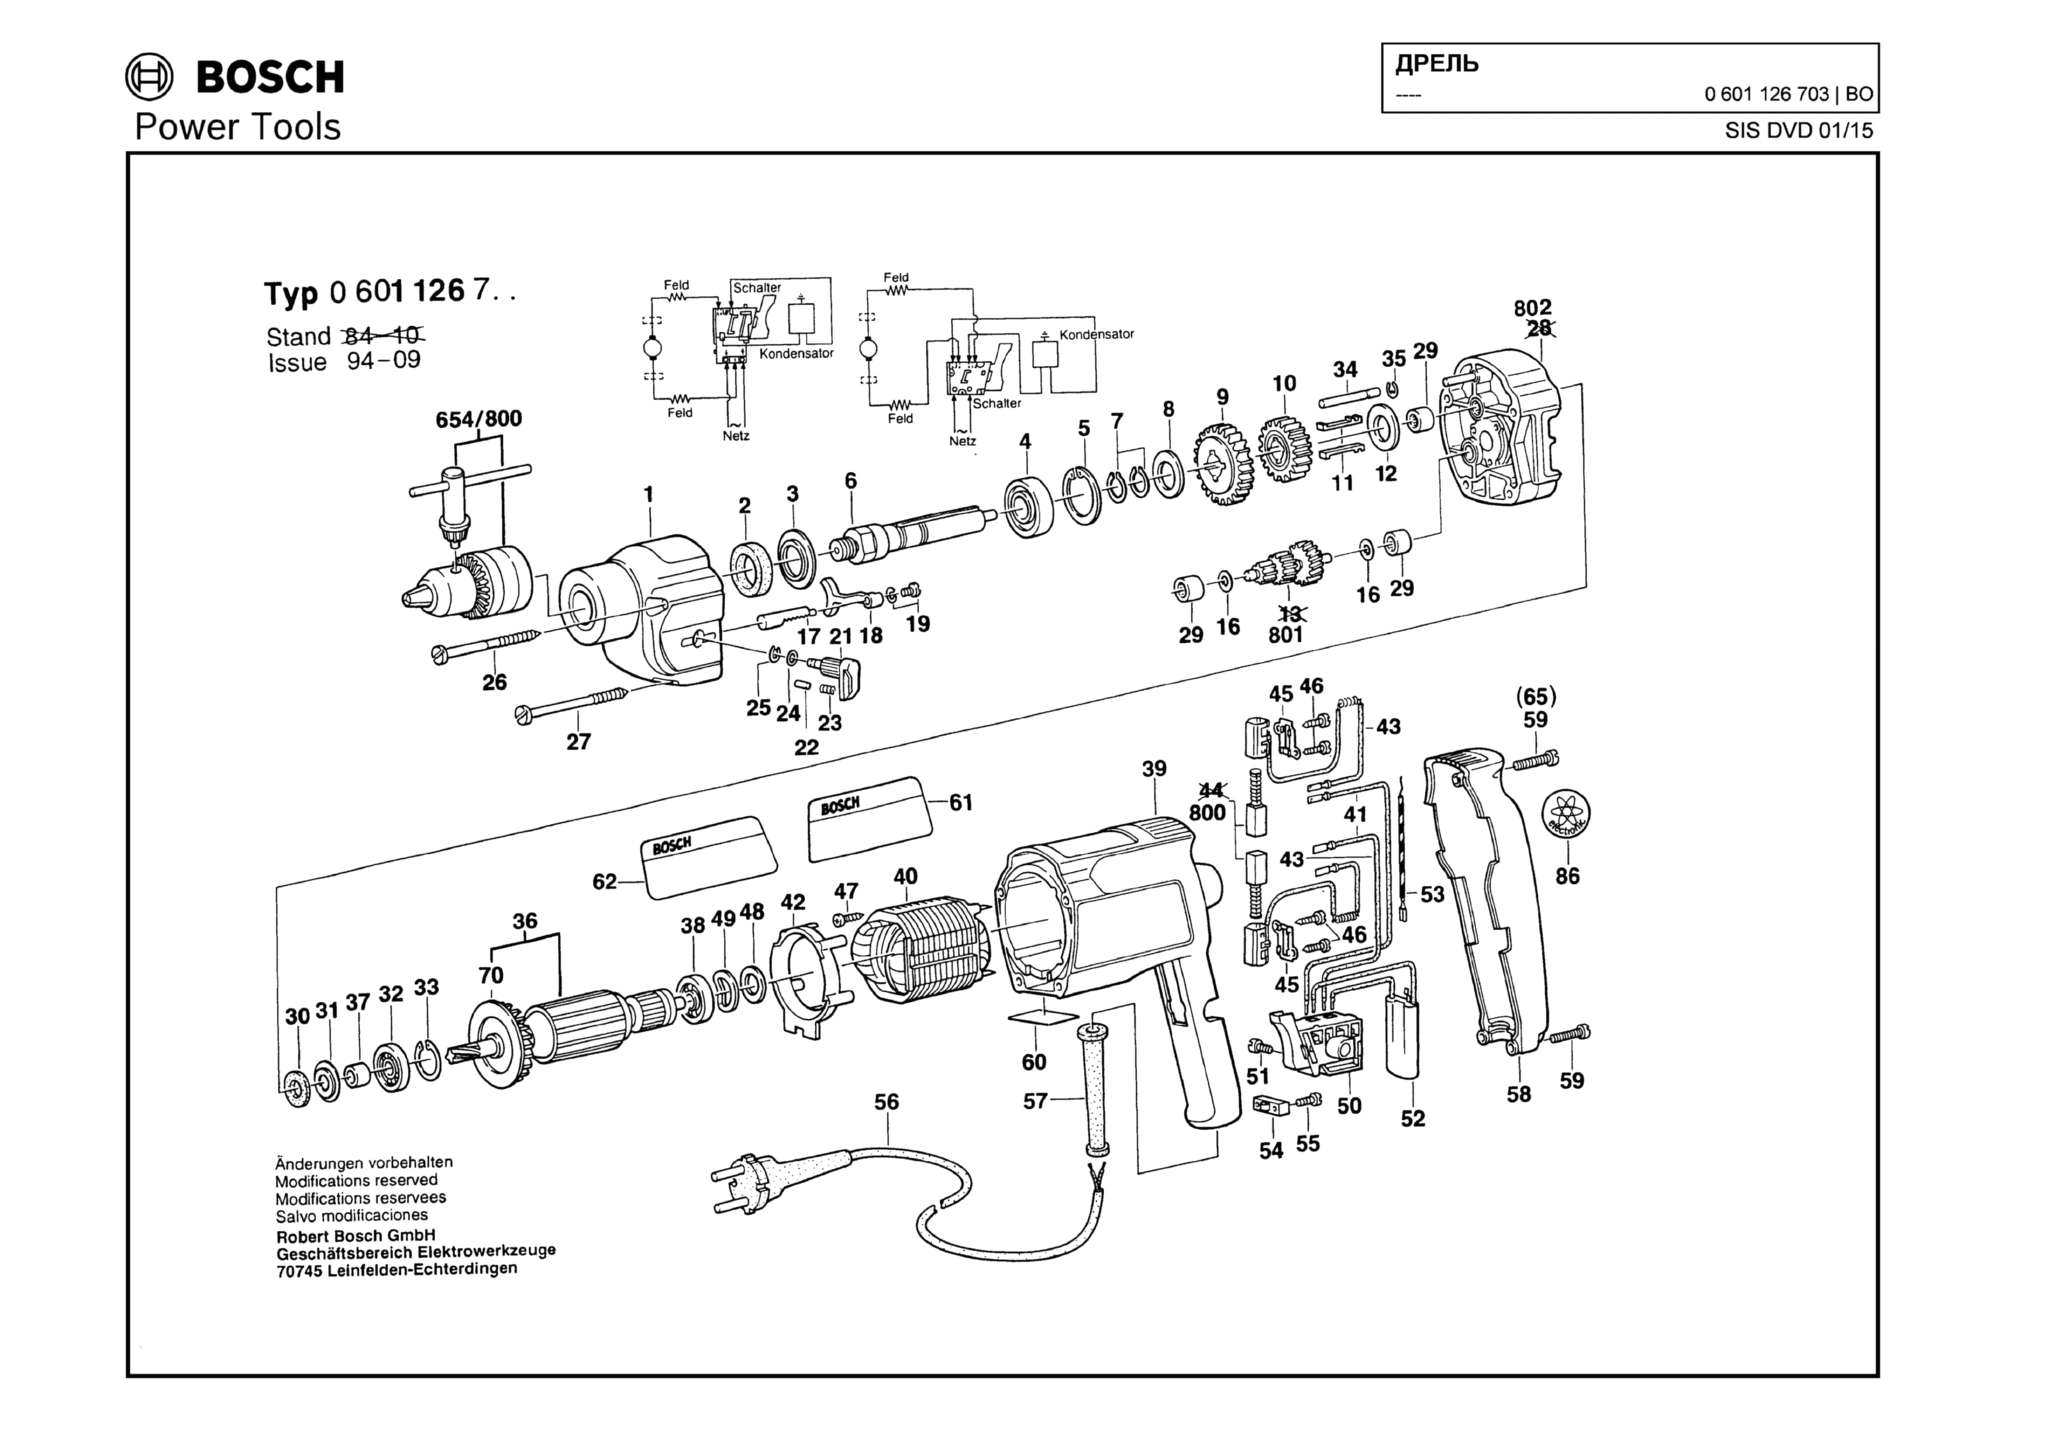 Запчасти, схема и деталировка Bosch (ТИП 0601126703)